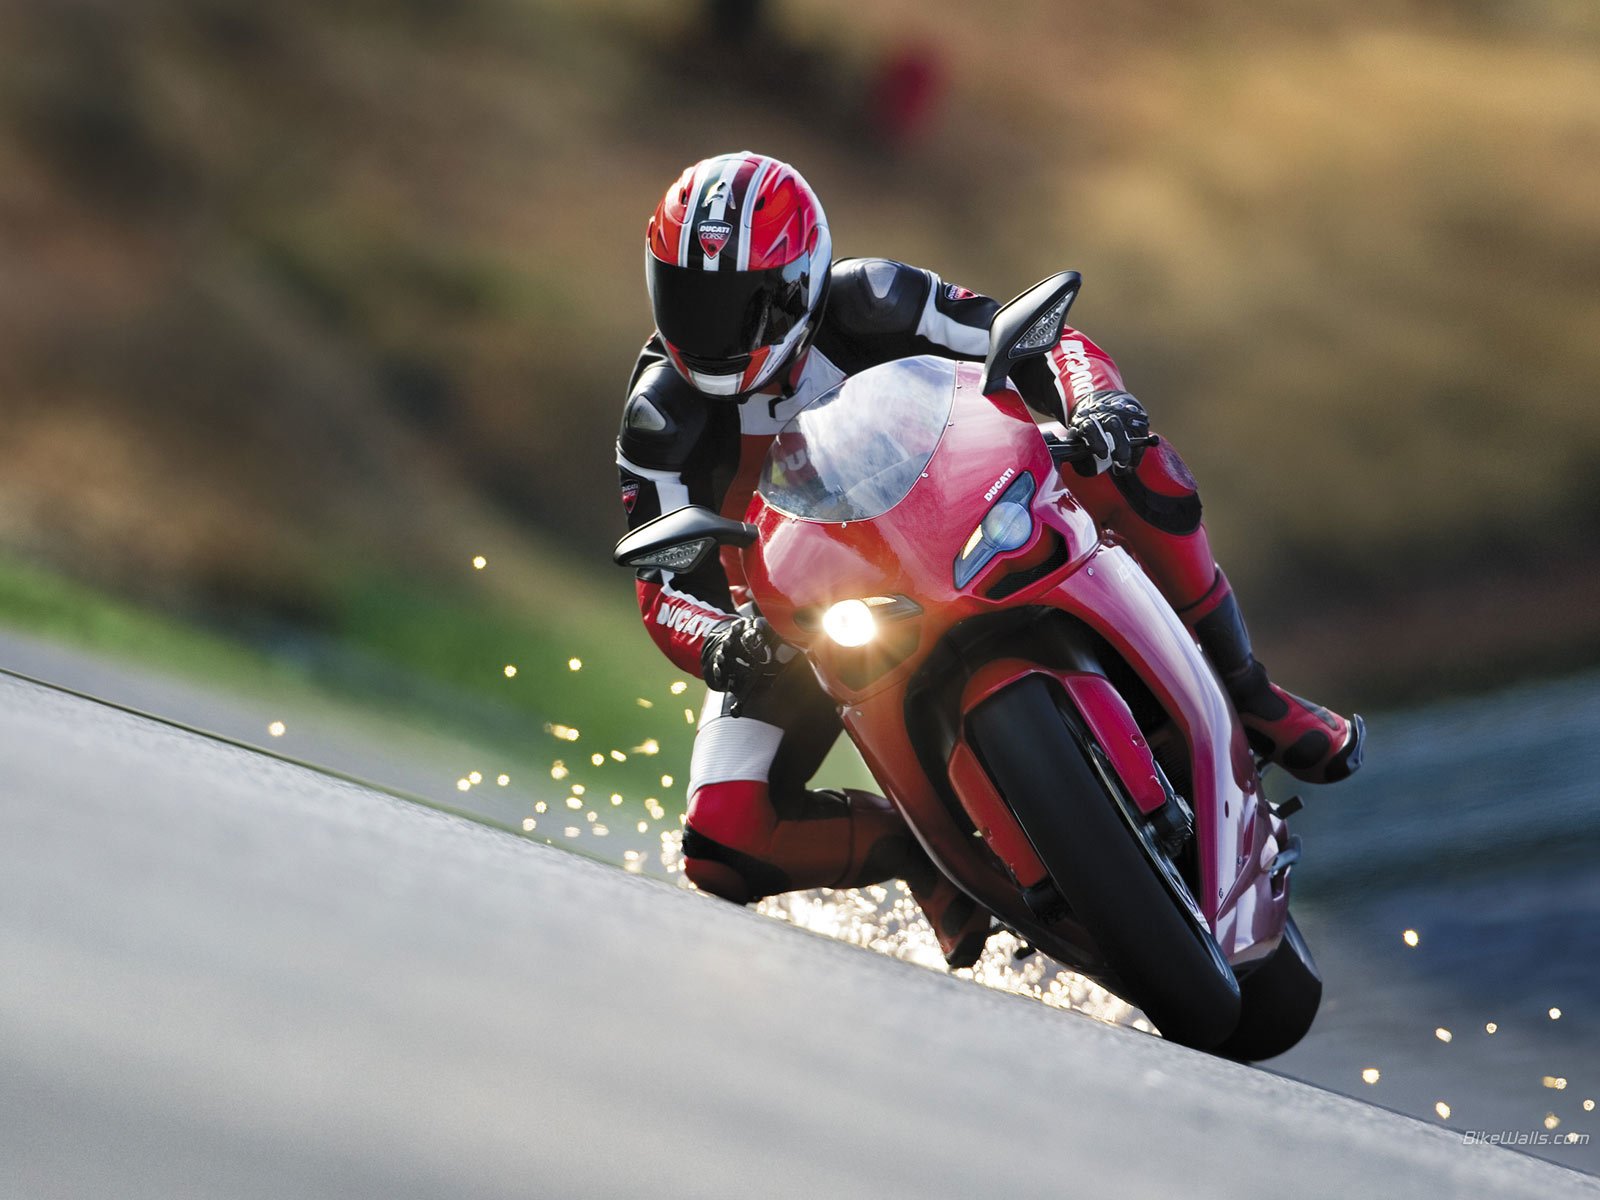 Best Wallpaper Motorcycle - HD Wallpaper 